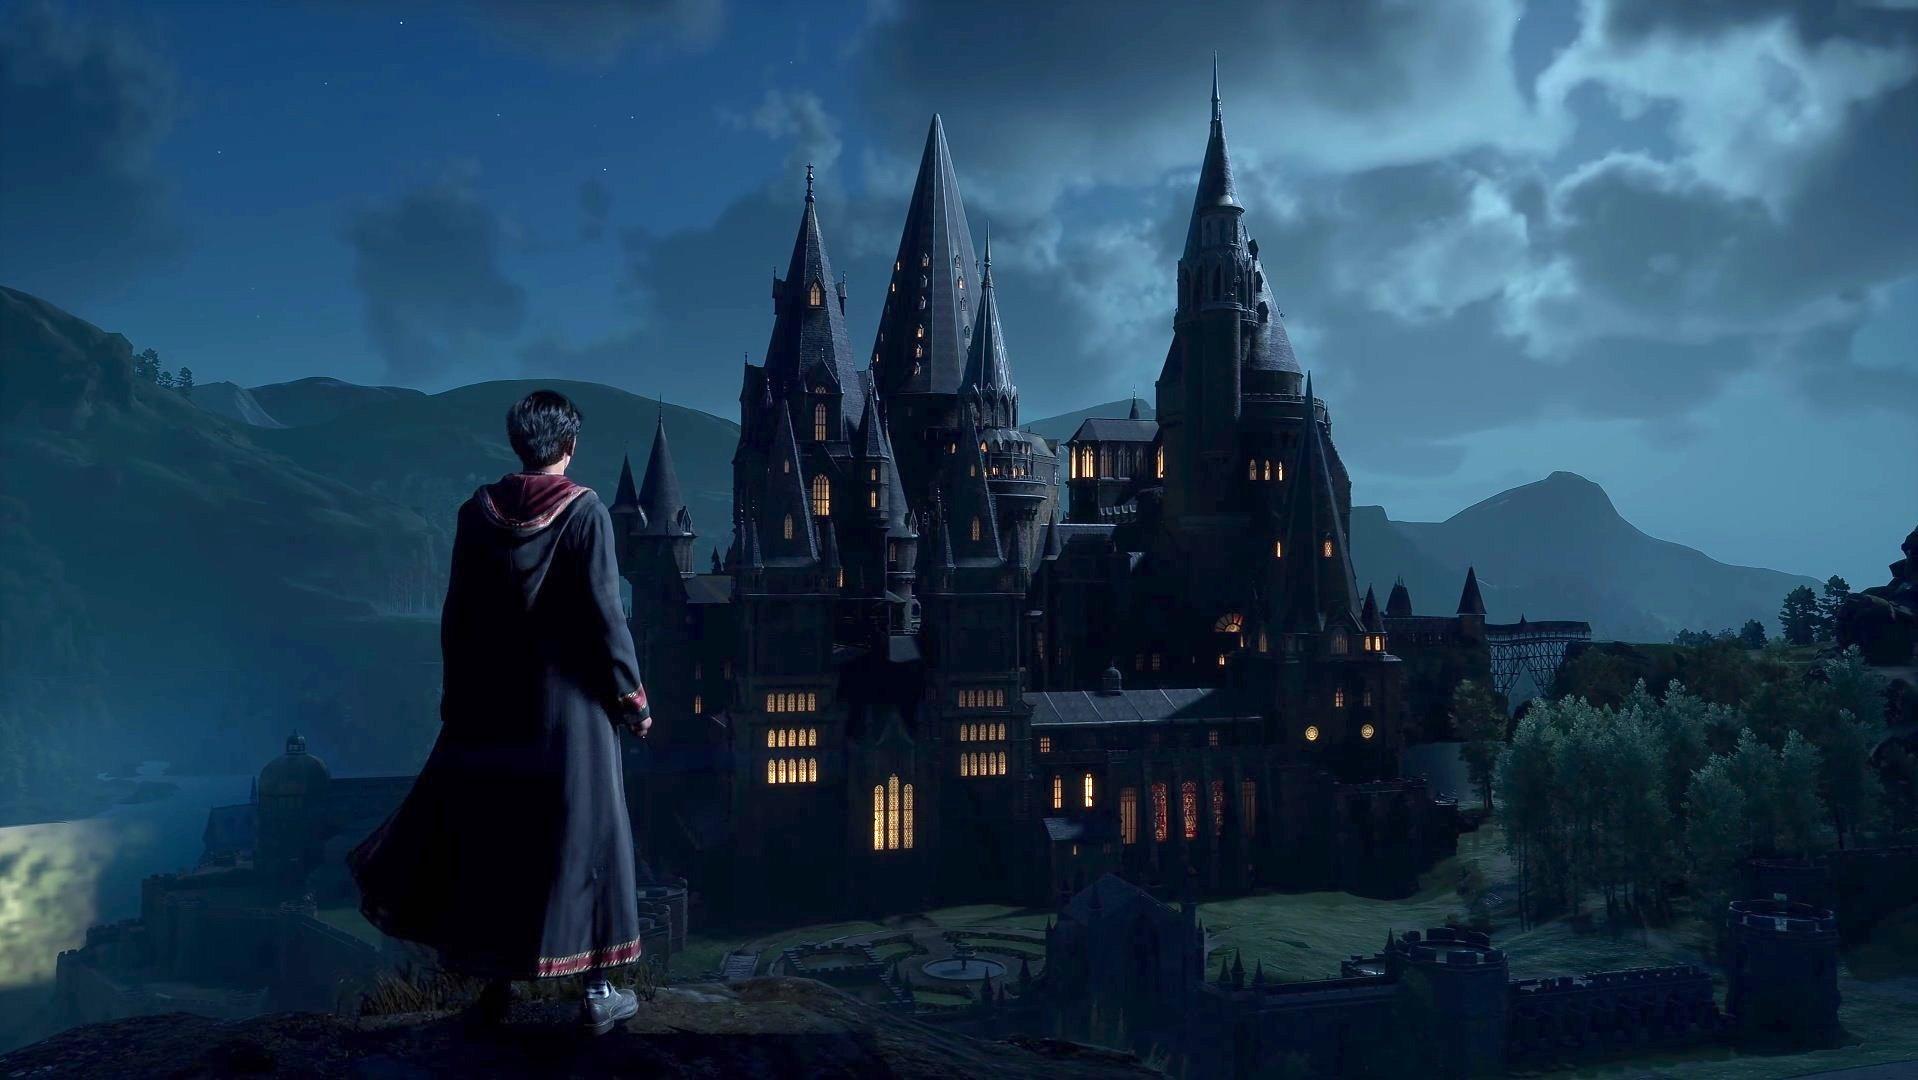 Hogwarts Legacy - PlayStation®